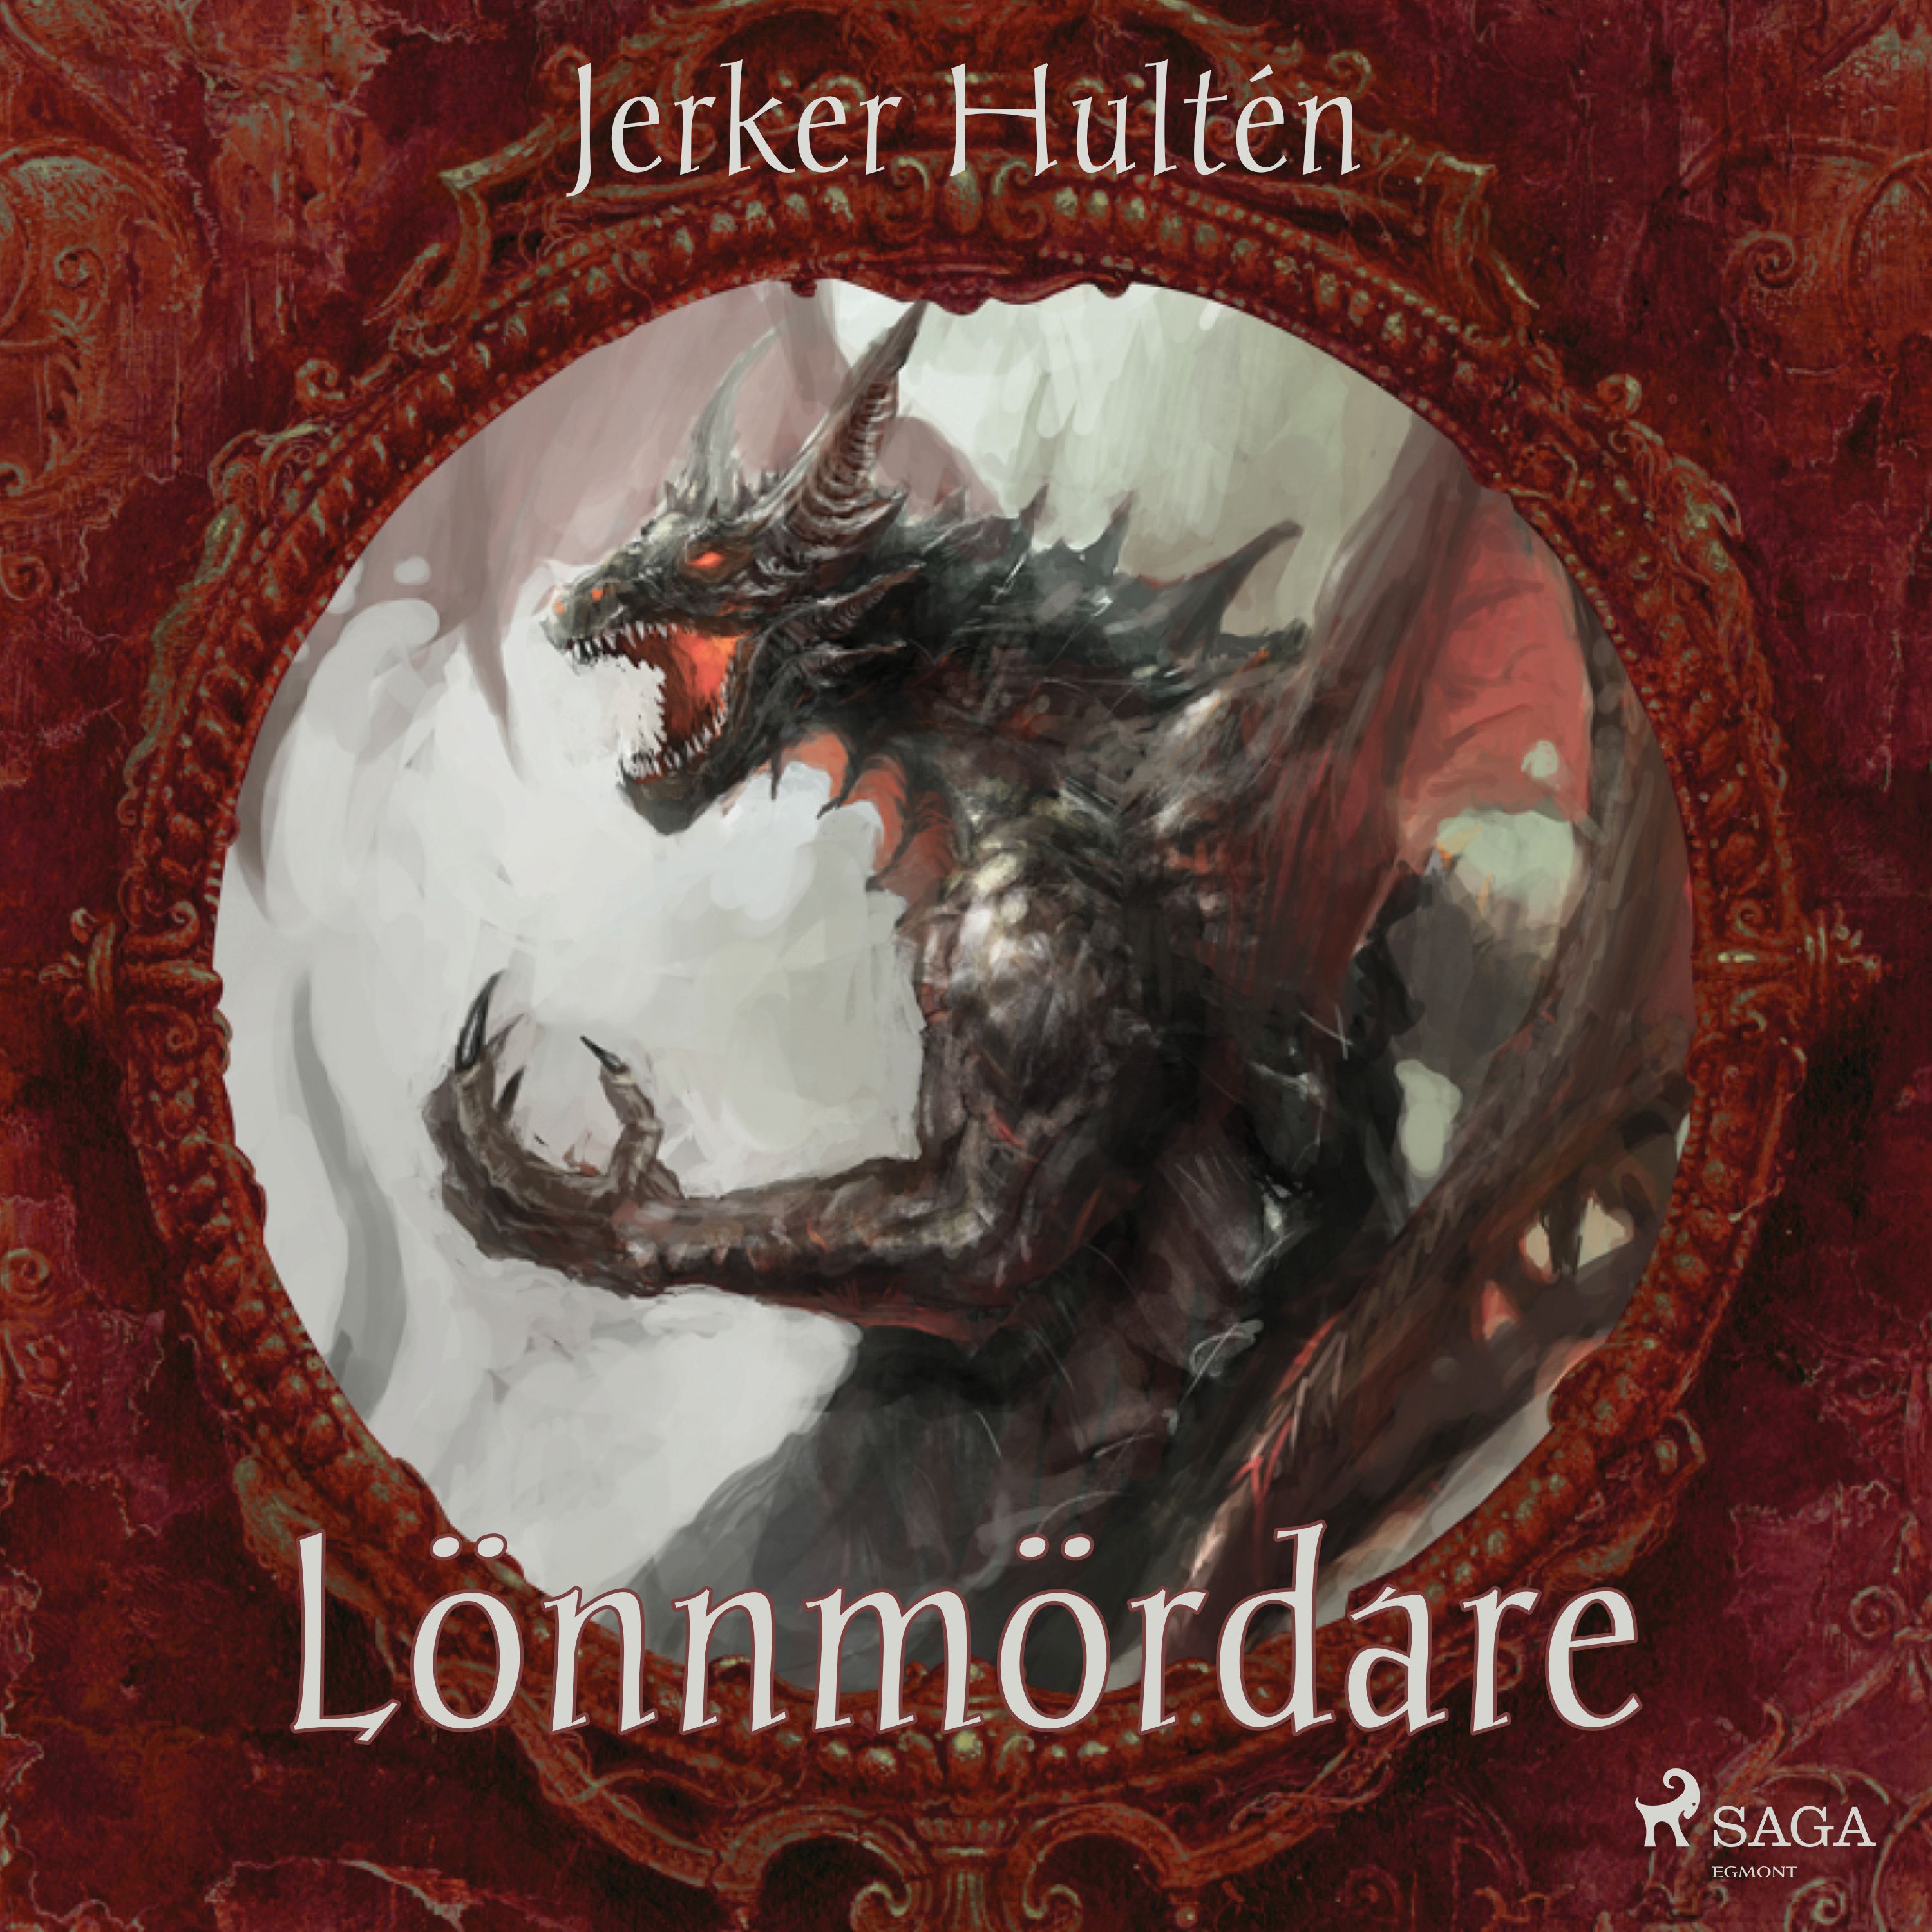 Lönnmördare, audiobook by Jerker Hultén